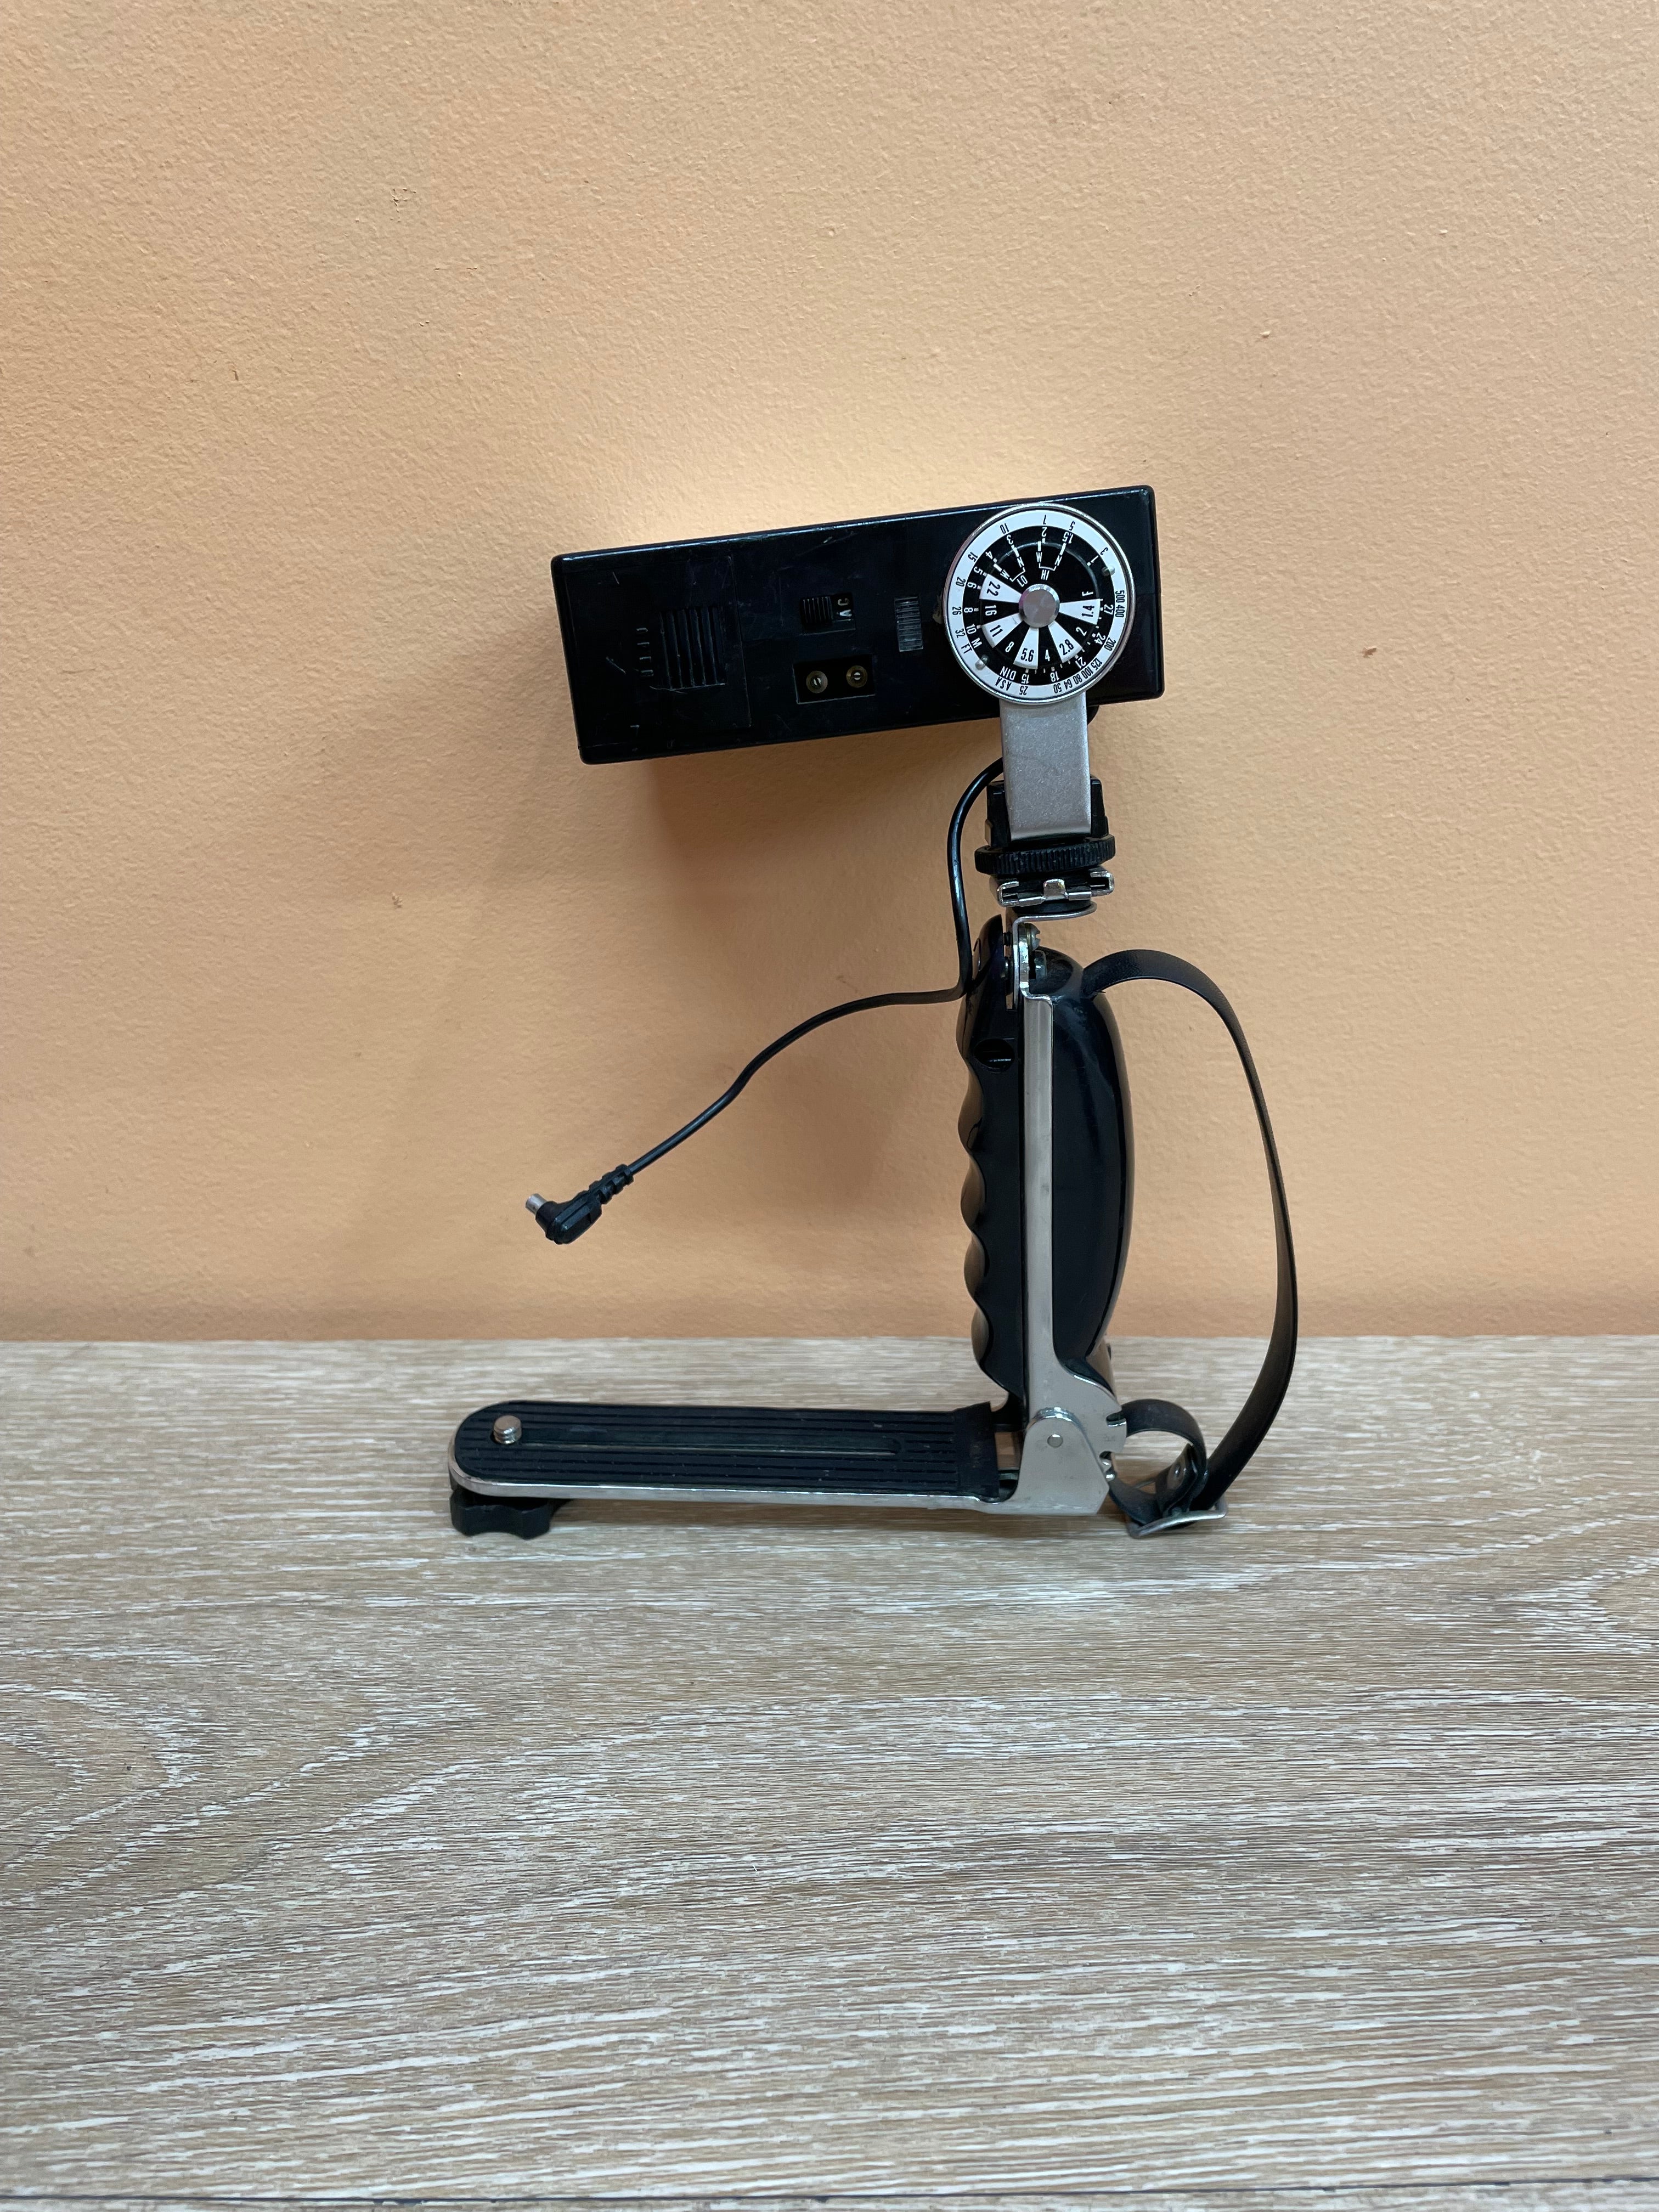 Praktica Super TL Camera with Case & Extras